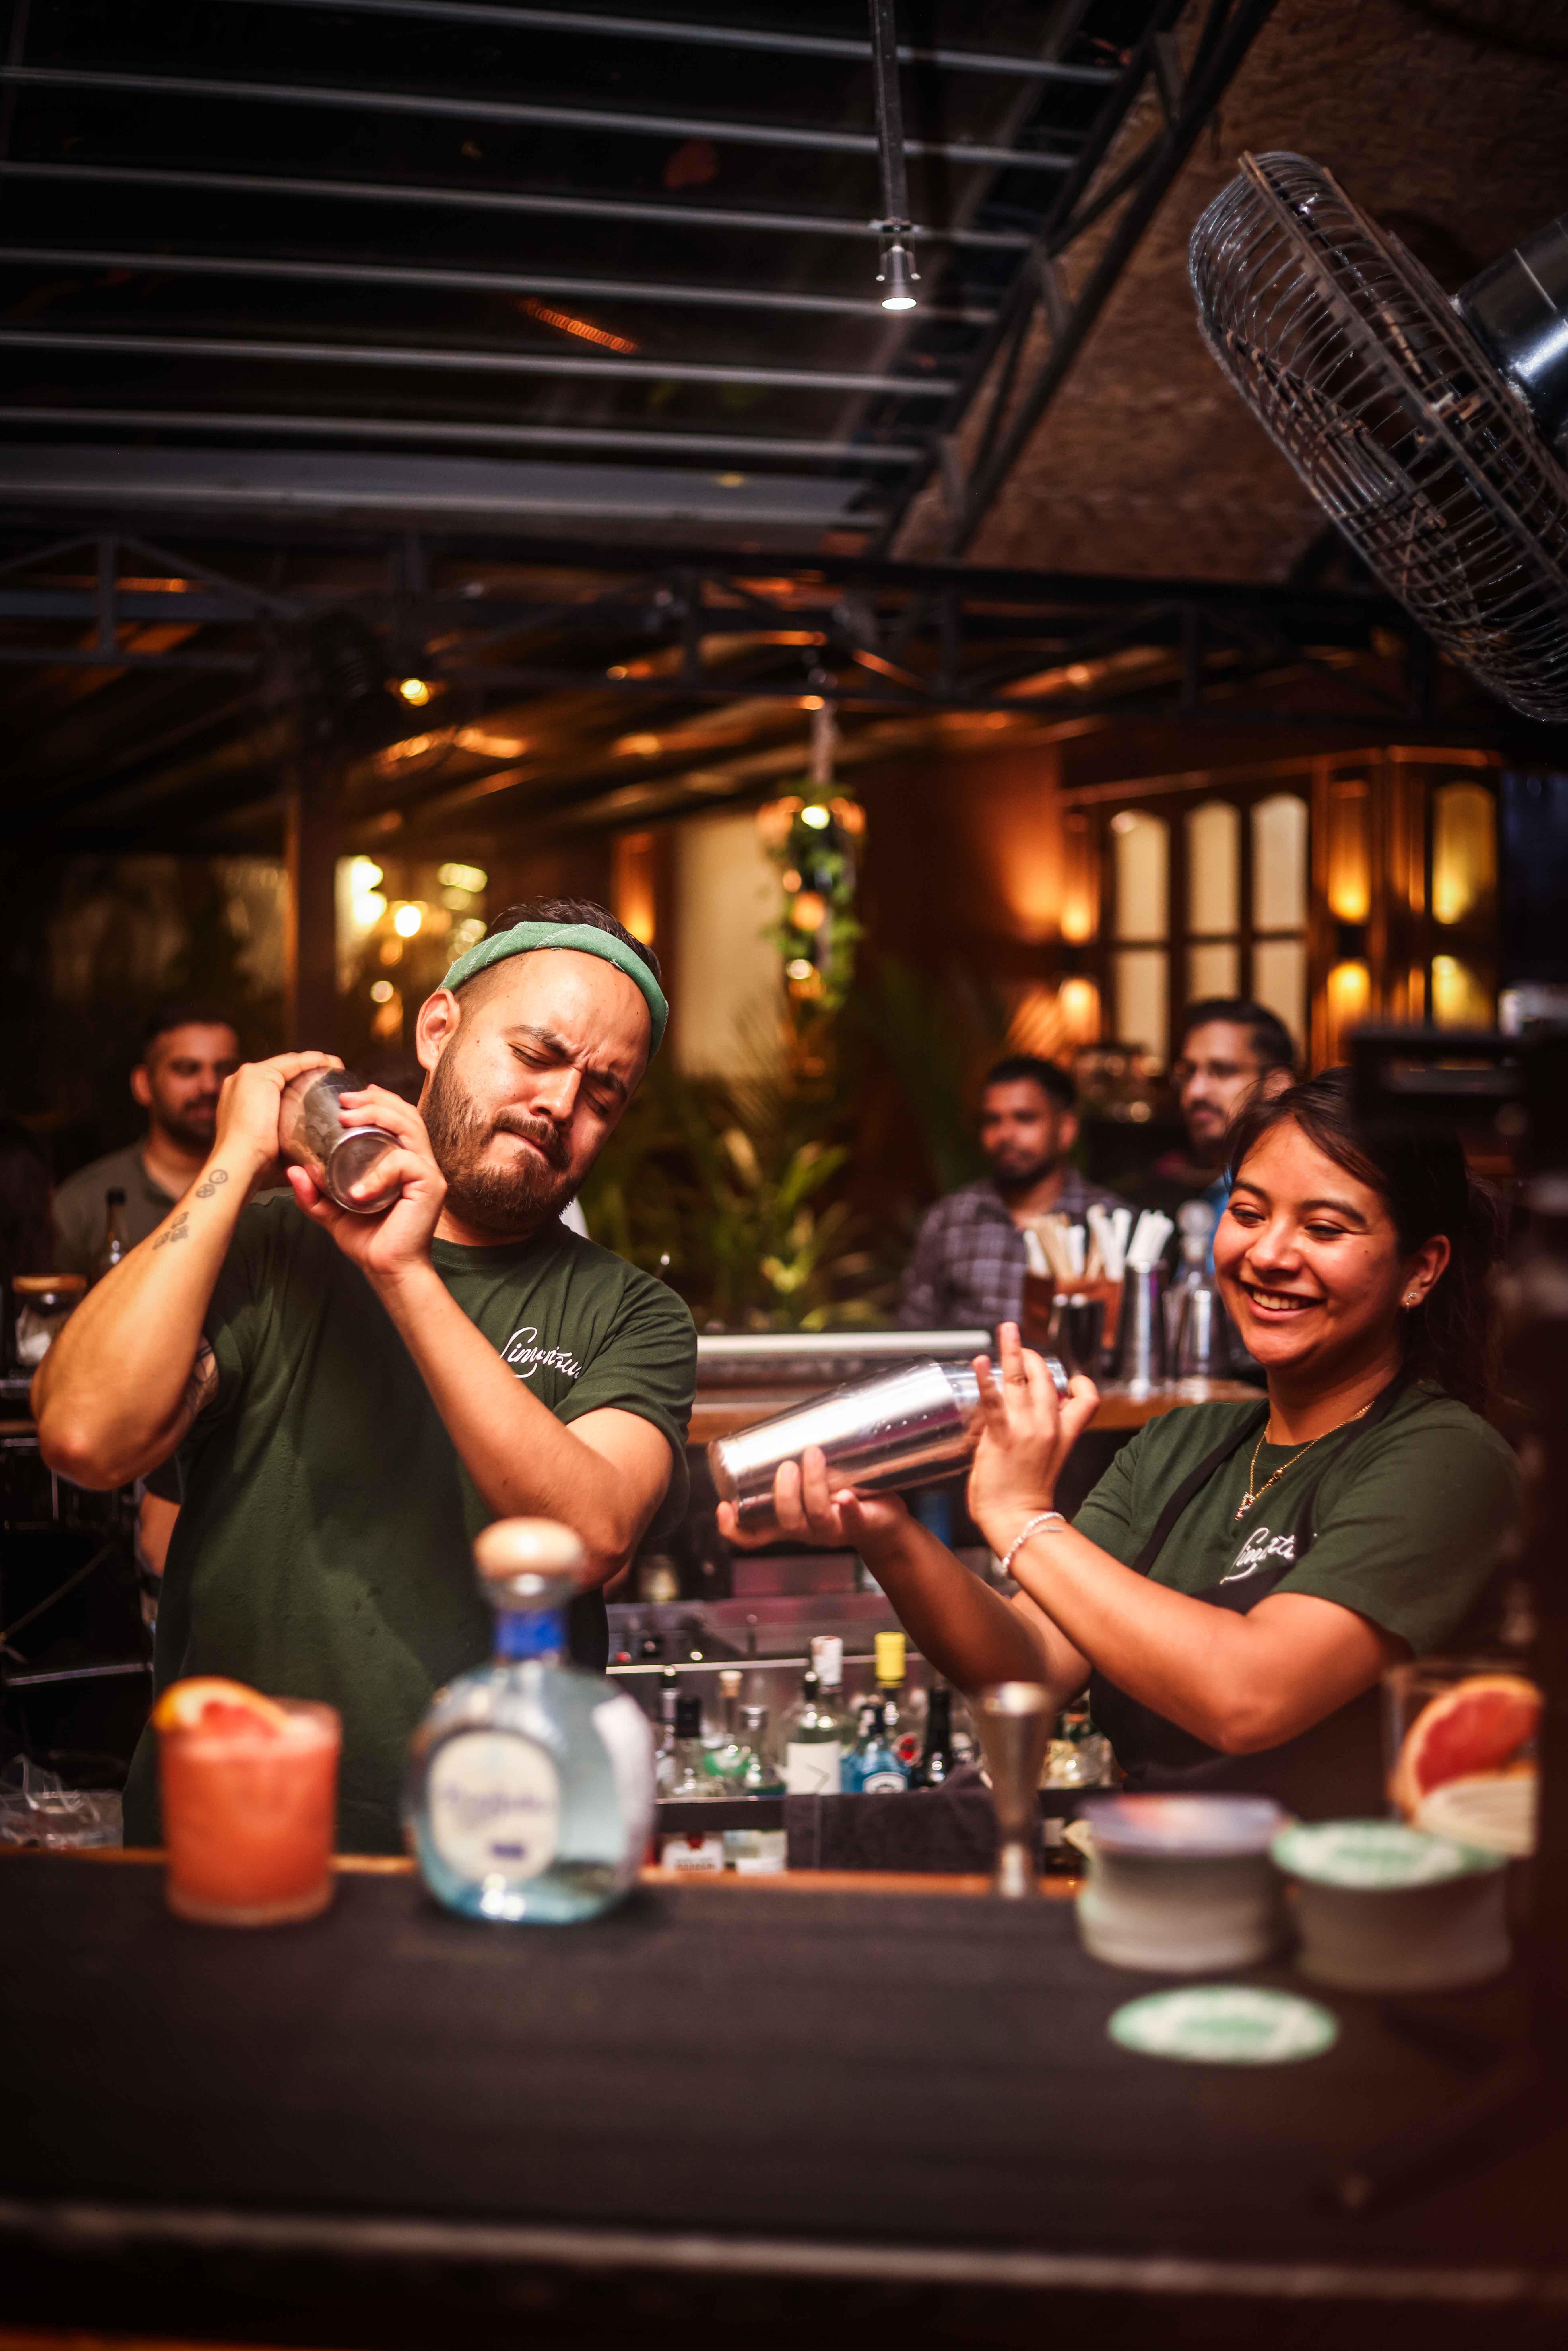 José Luis León & Pamela making cocktails at Elephant & co